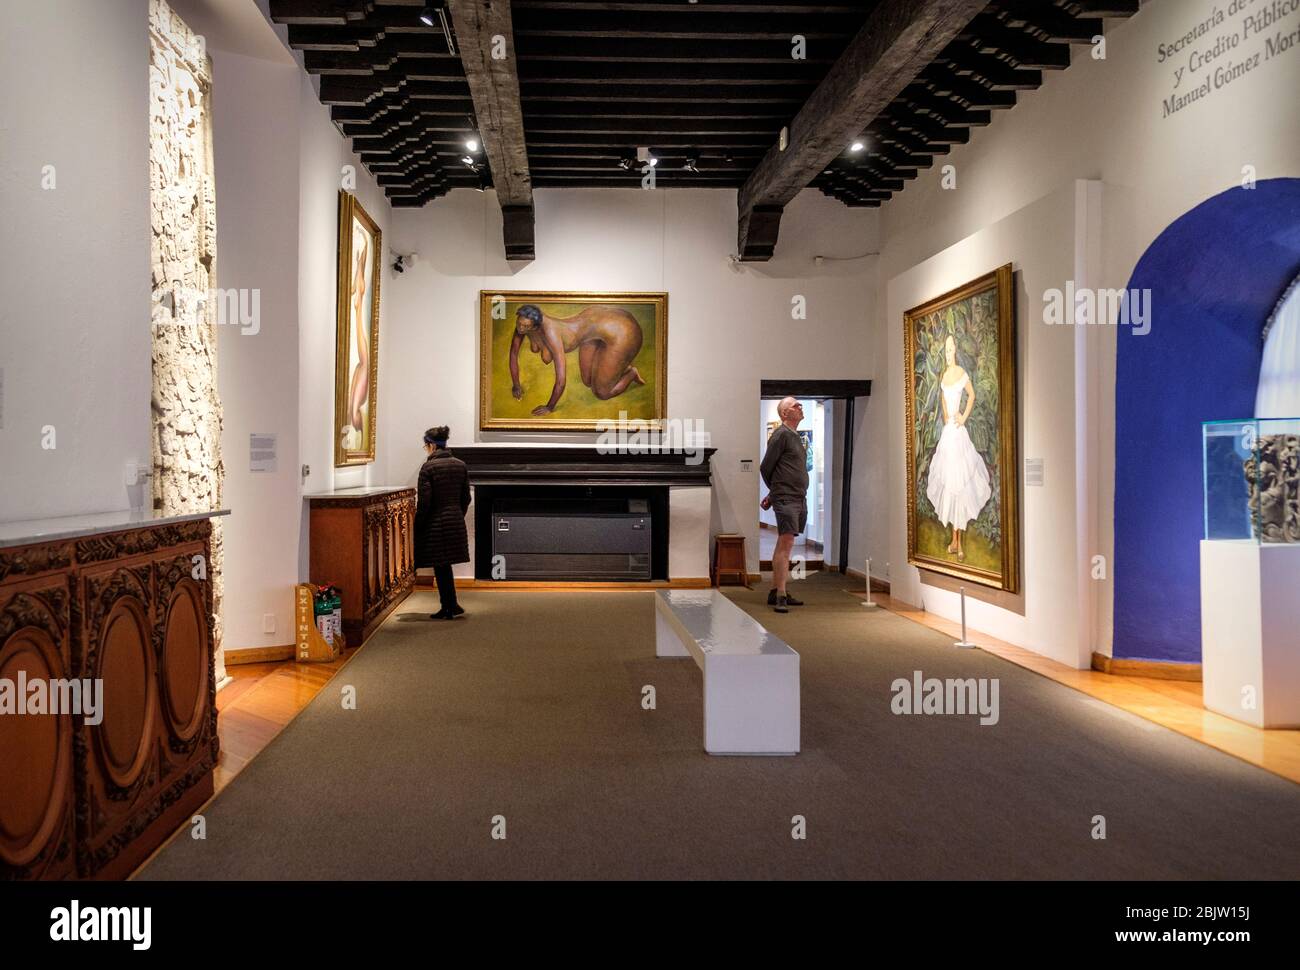 Museo Dolores Olmedo avec la célèbre collection de Frida Kahlo et Diego Rivera, Mexico, Mexique Banque D'Images